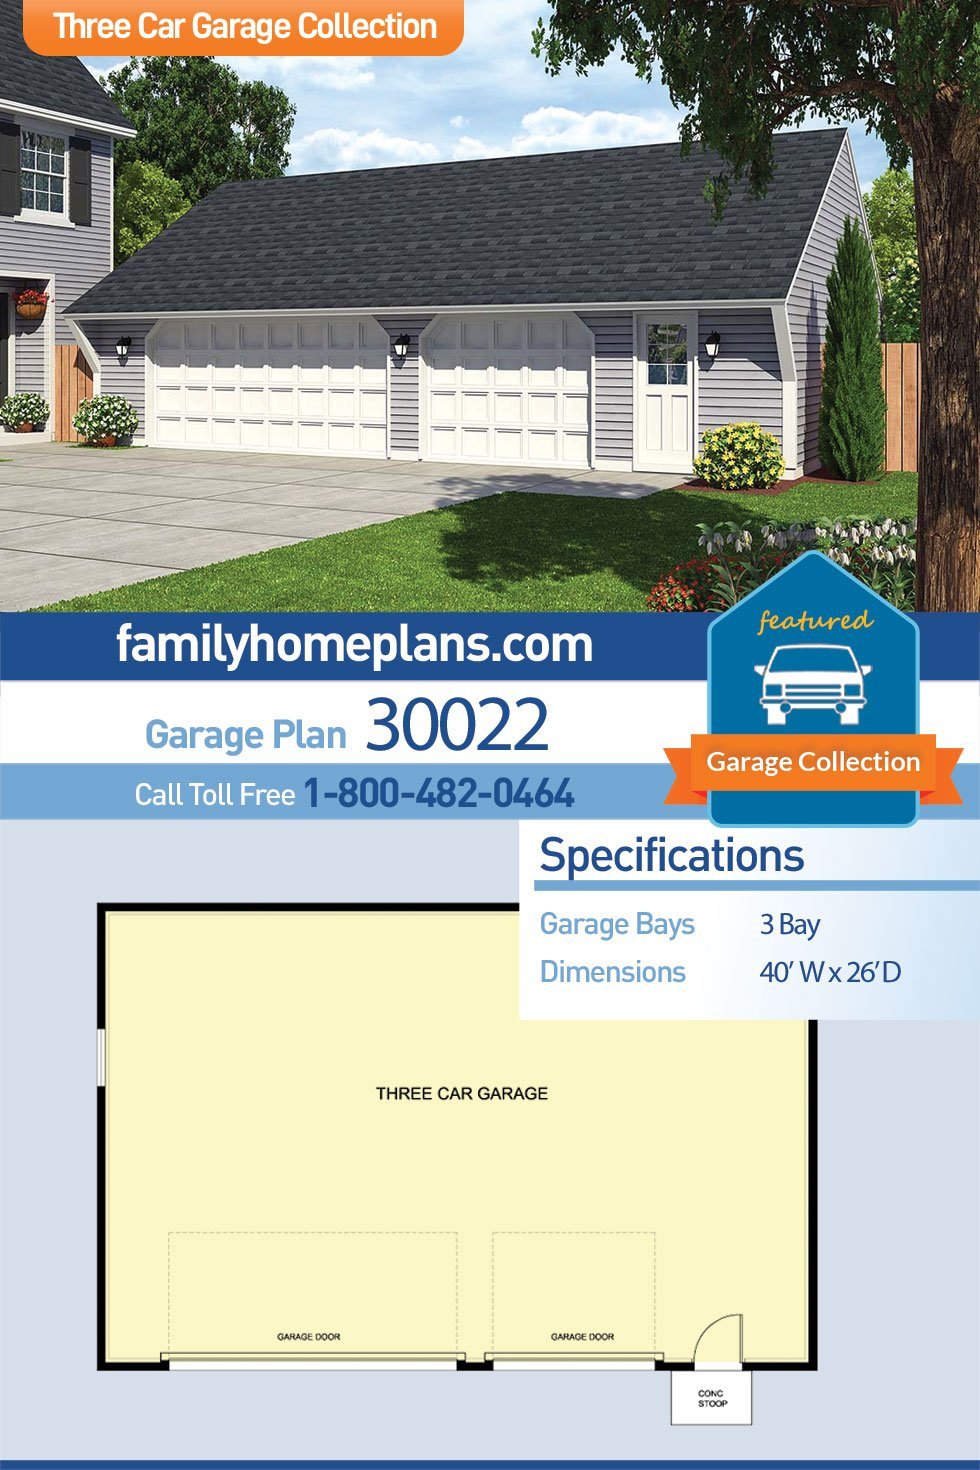 Garage Plan 30022 - 3 Car Garage